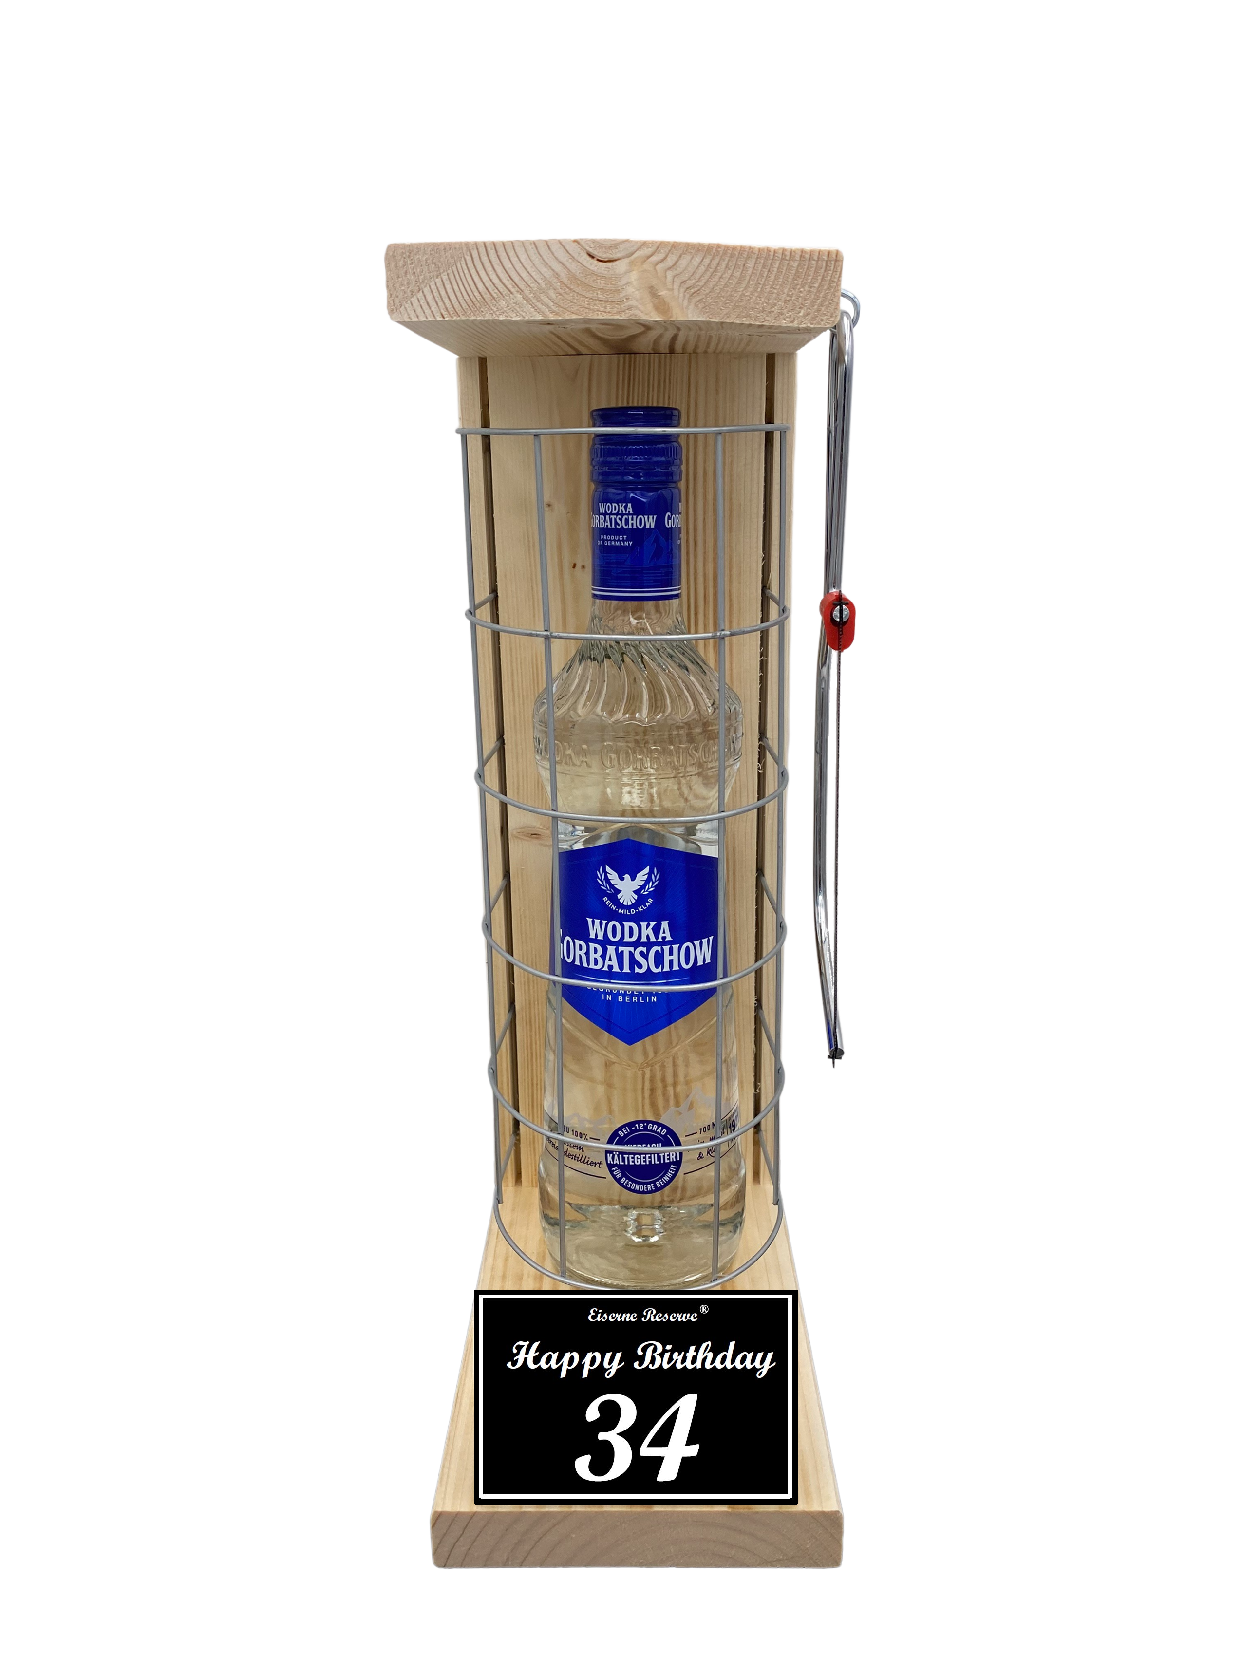 Wodka Geschenk zum 34 Geburtstag - Eiserne Reserve Gitterkäfig